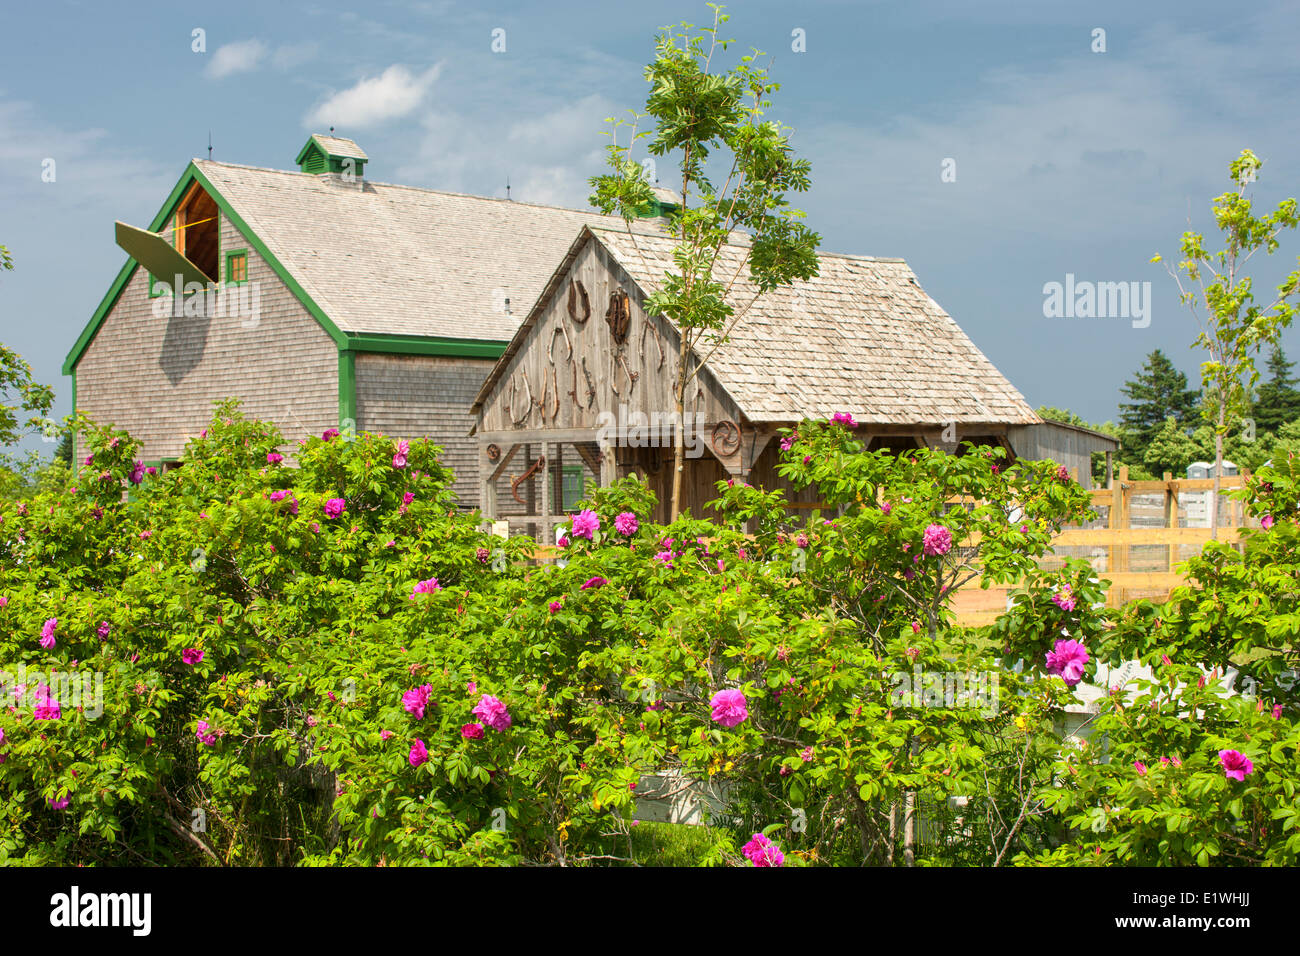 Fienili, Avonlea villaggio di Anne di Green Gables, Prince Edward Island, Canada Foto Stock